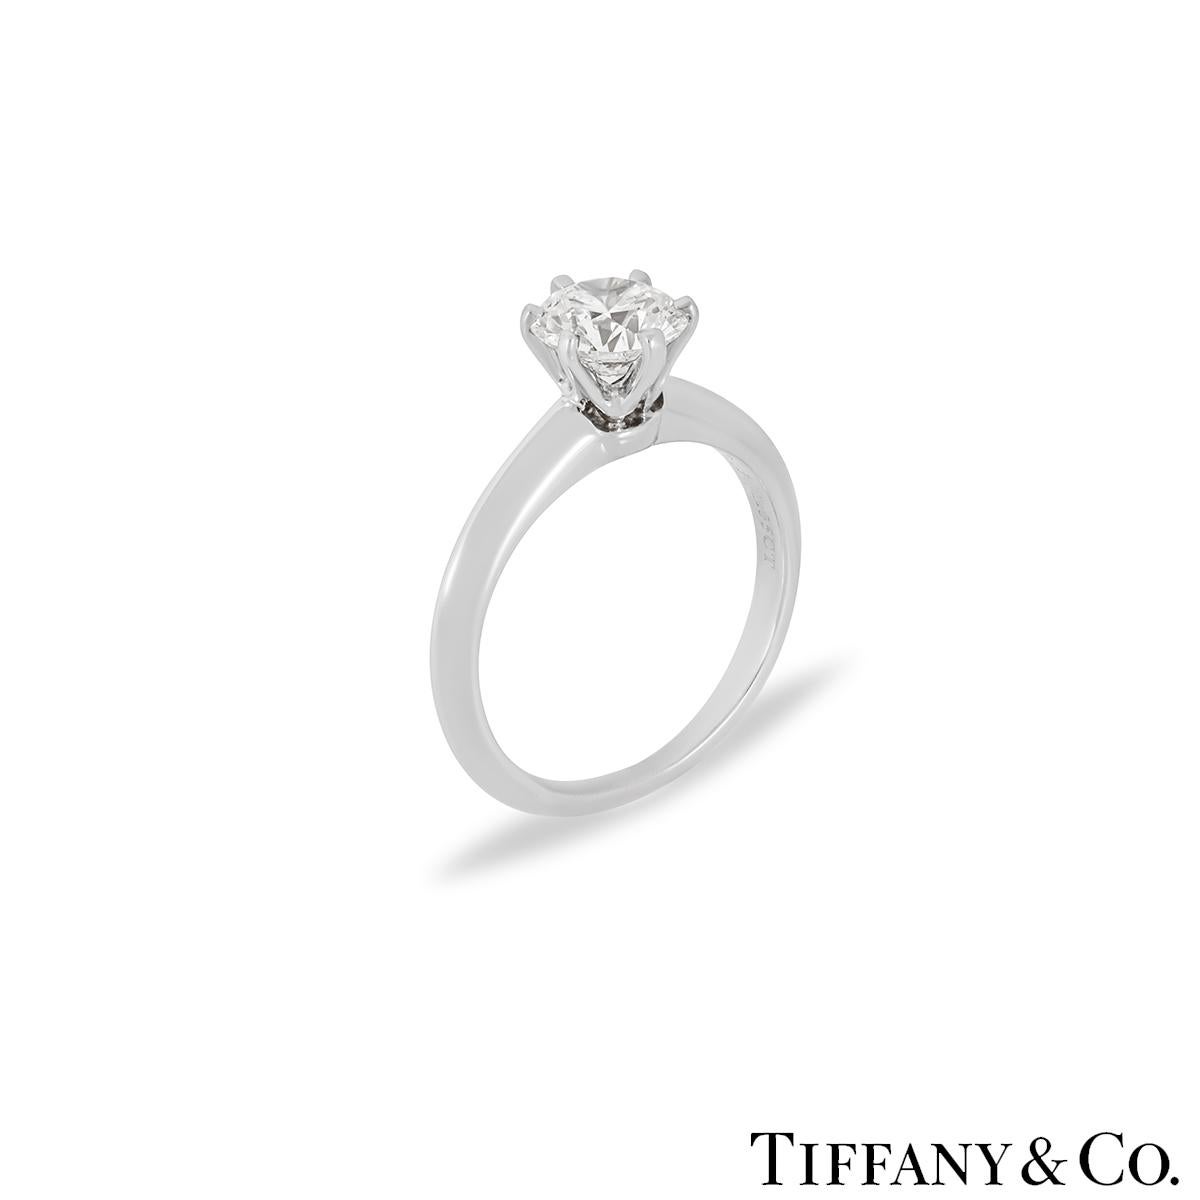 Ein atemberaubender Diamantring aus Platin von Tiffany & Co. Der Ring ist in der Mitte mit einem runden Brillanten von 1,05 Karat in einer klassischen Fassung besetzt. Der Diamant hat die Farbe H und die Reinheit VS2. Der Ring hat derzeit die Größe